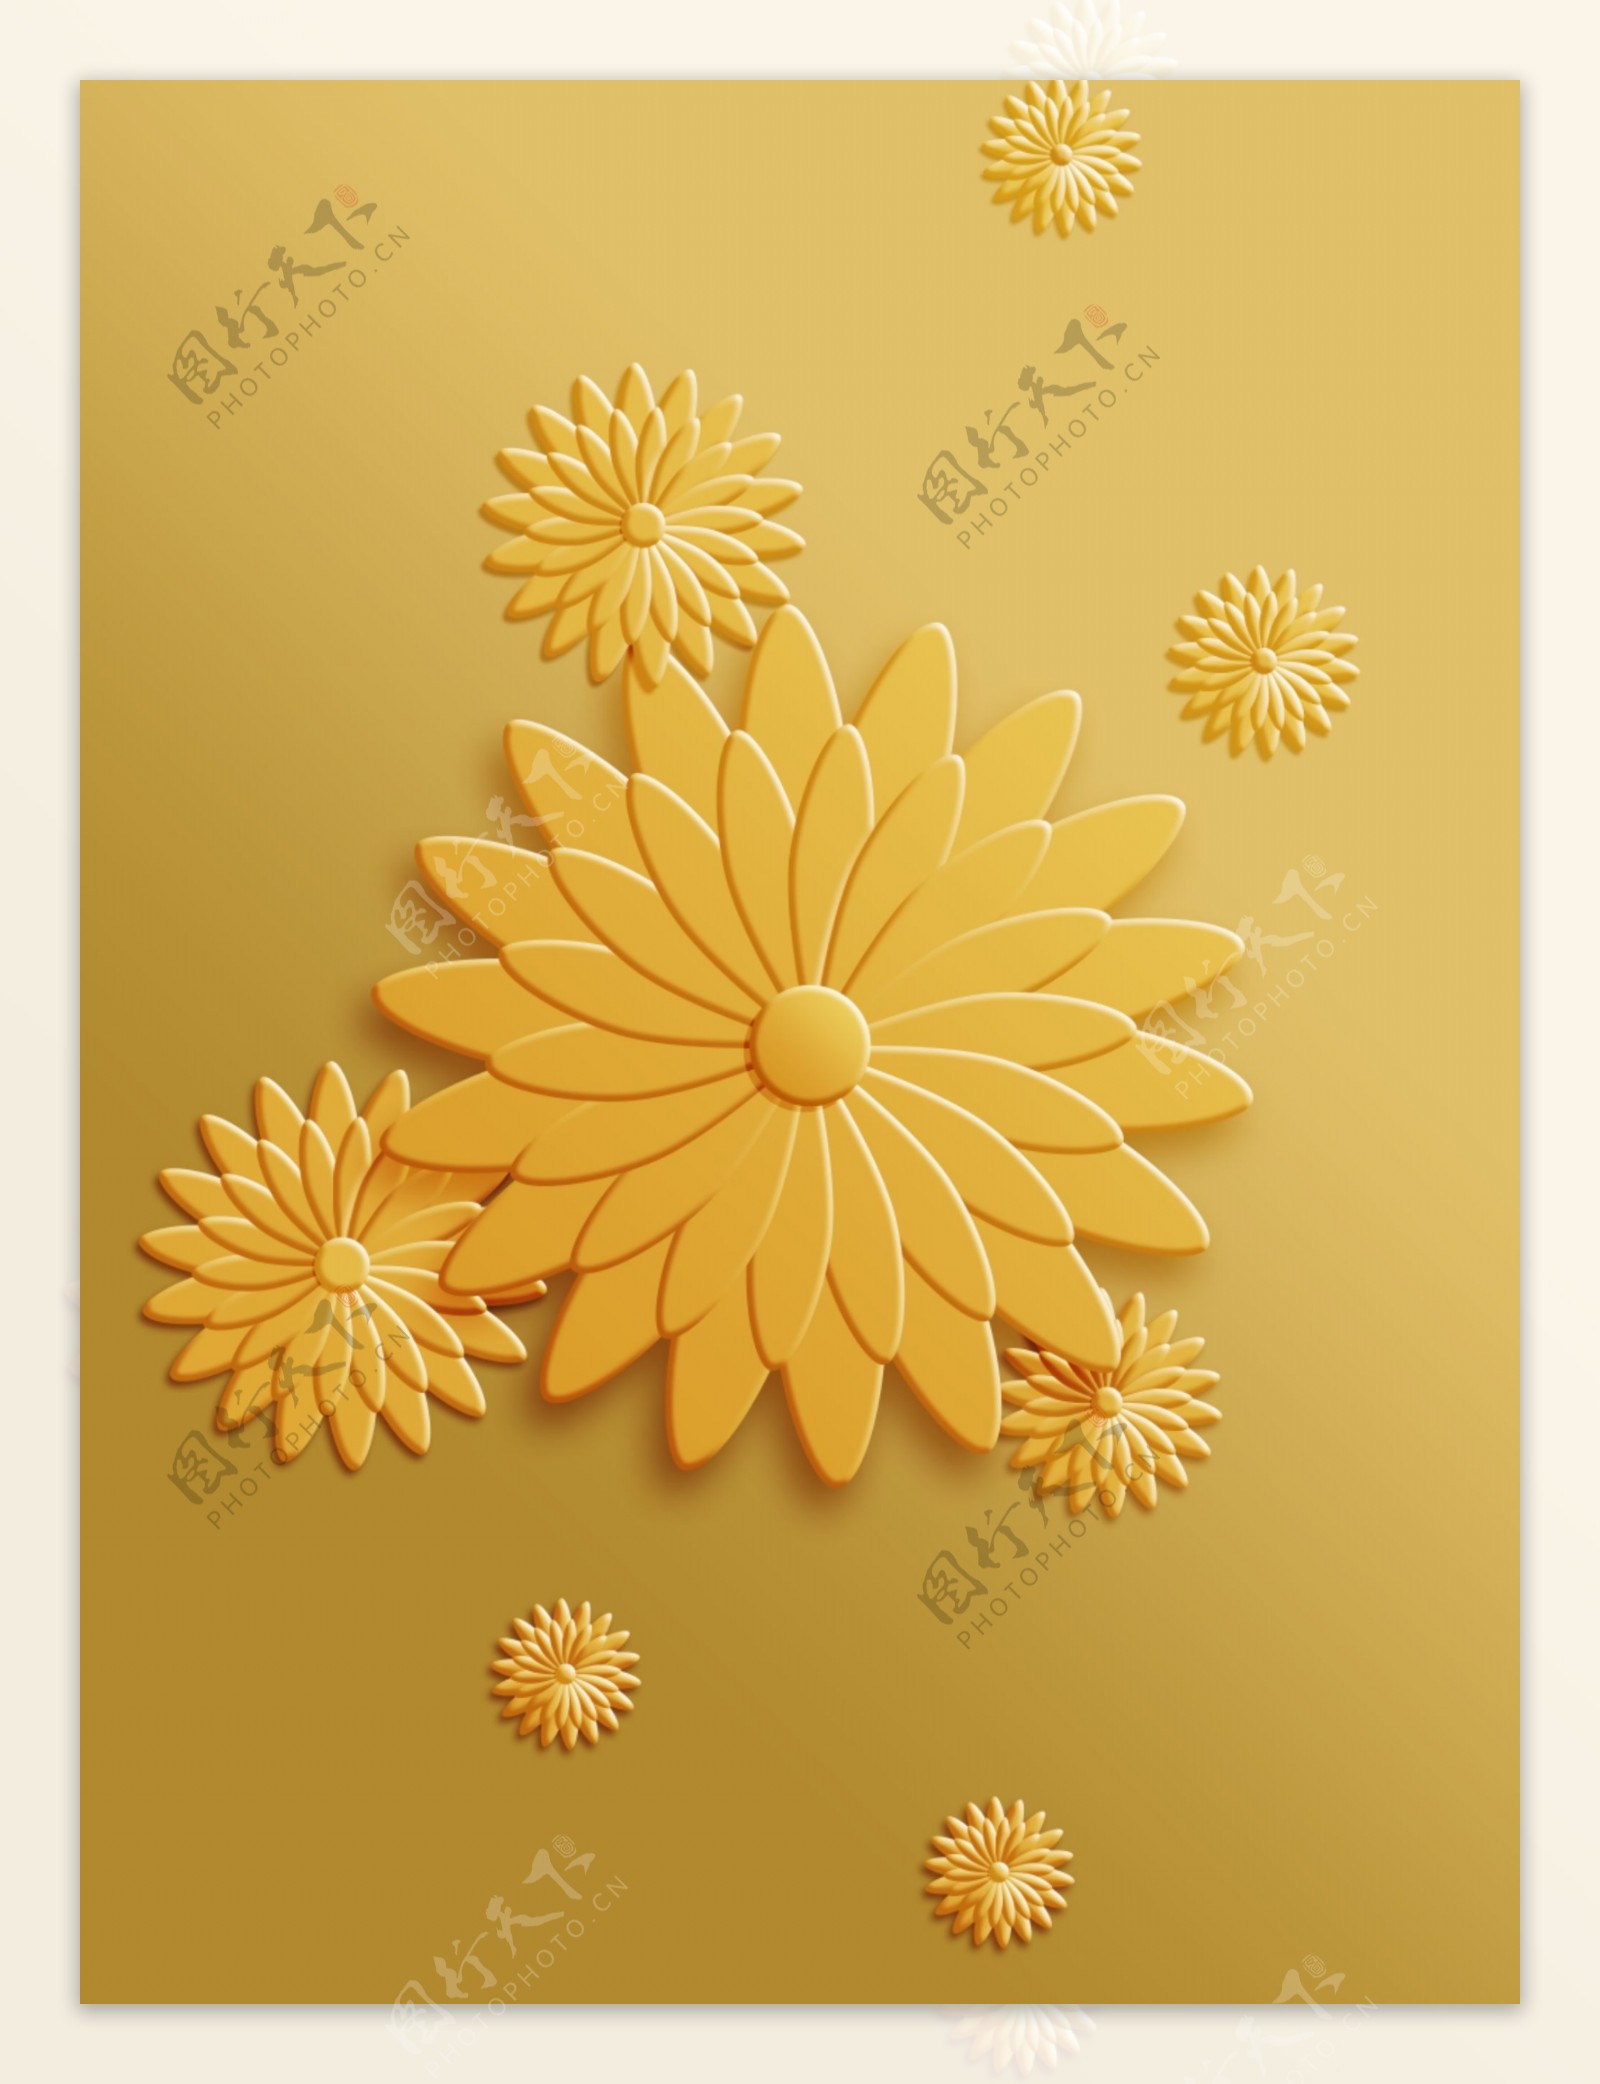 3D浮雕莲花金色背景图